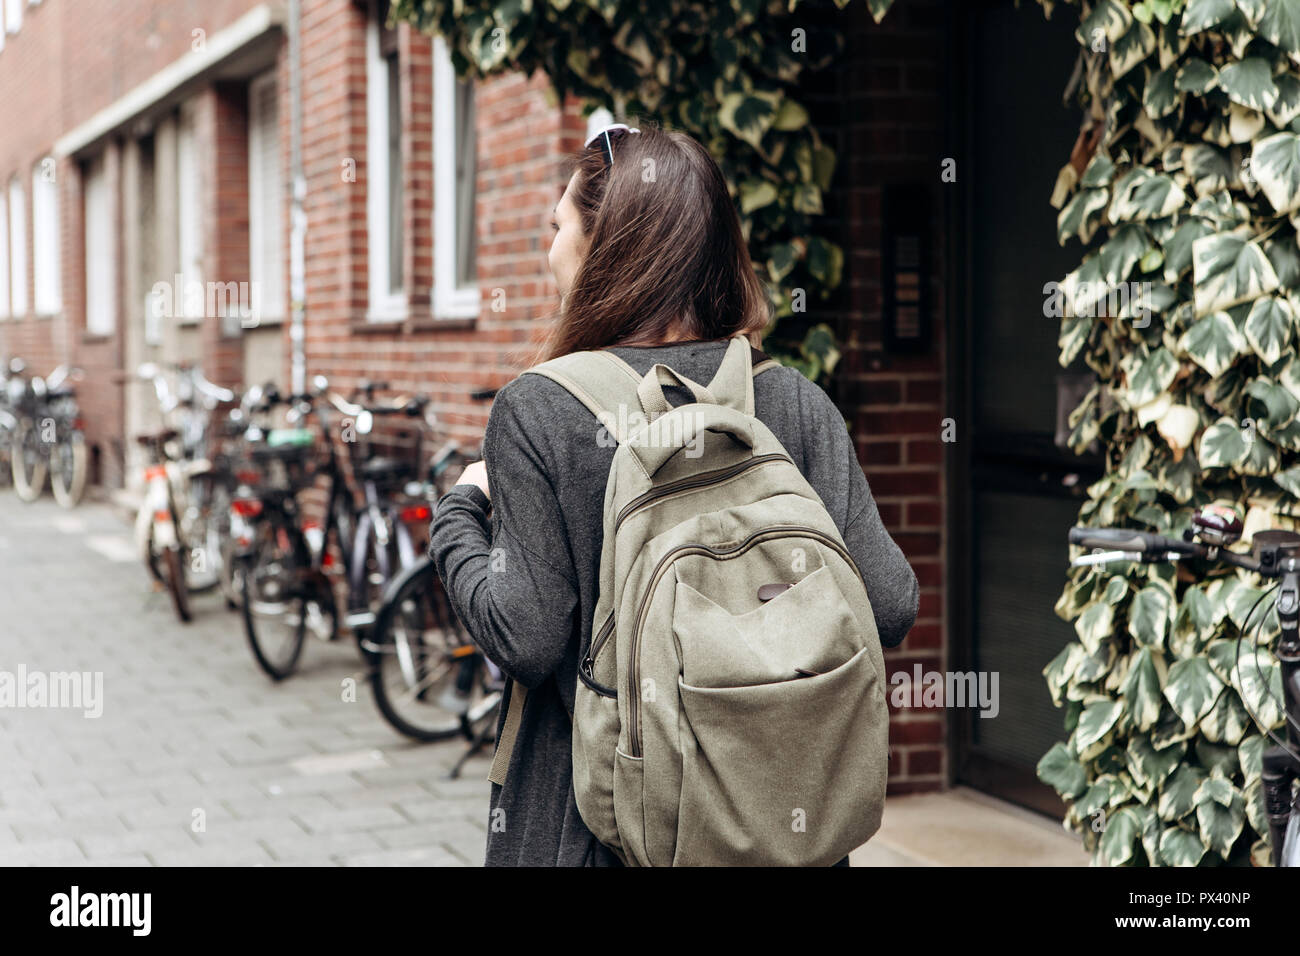 Touristen mit einem Rucksack ist auf der Suche nach online buchen Unterkünfte in einer fremden Stadt. Oder ein Schüler Mädchen mit einem Rucksack ist ein Spaziergang durch die Stadt. Stockfoto